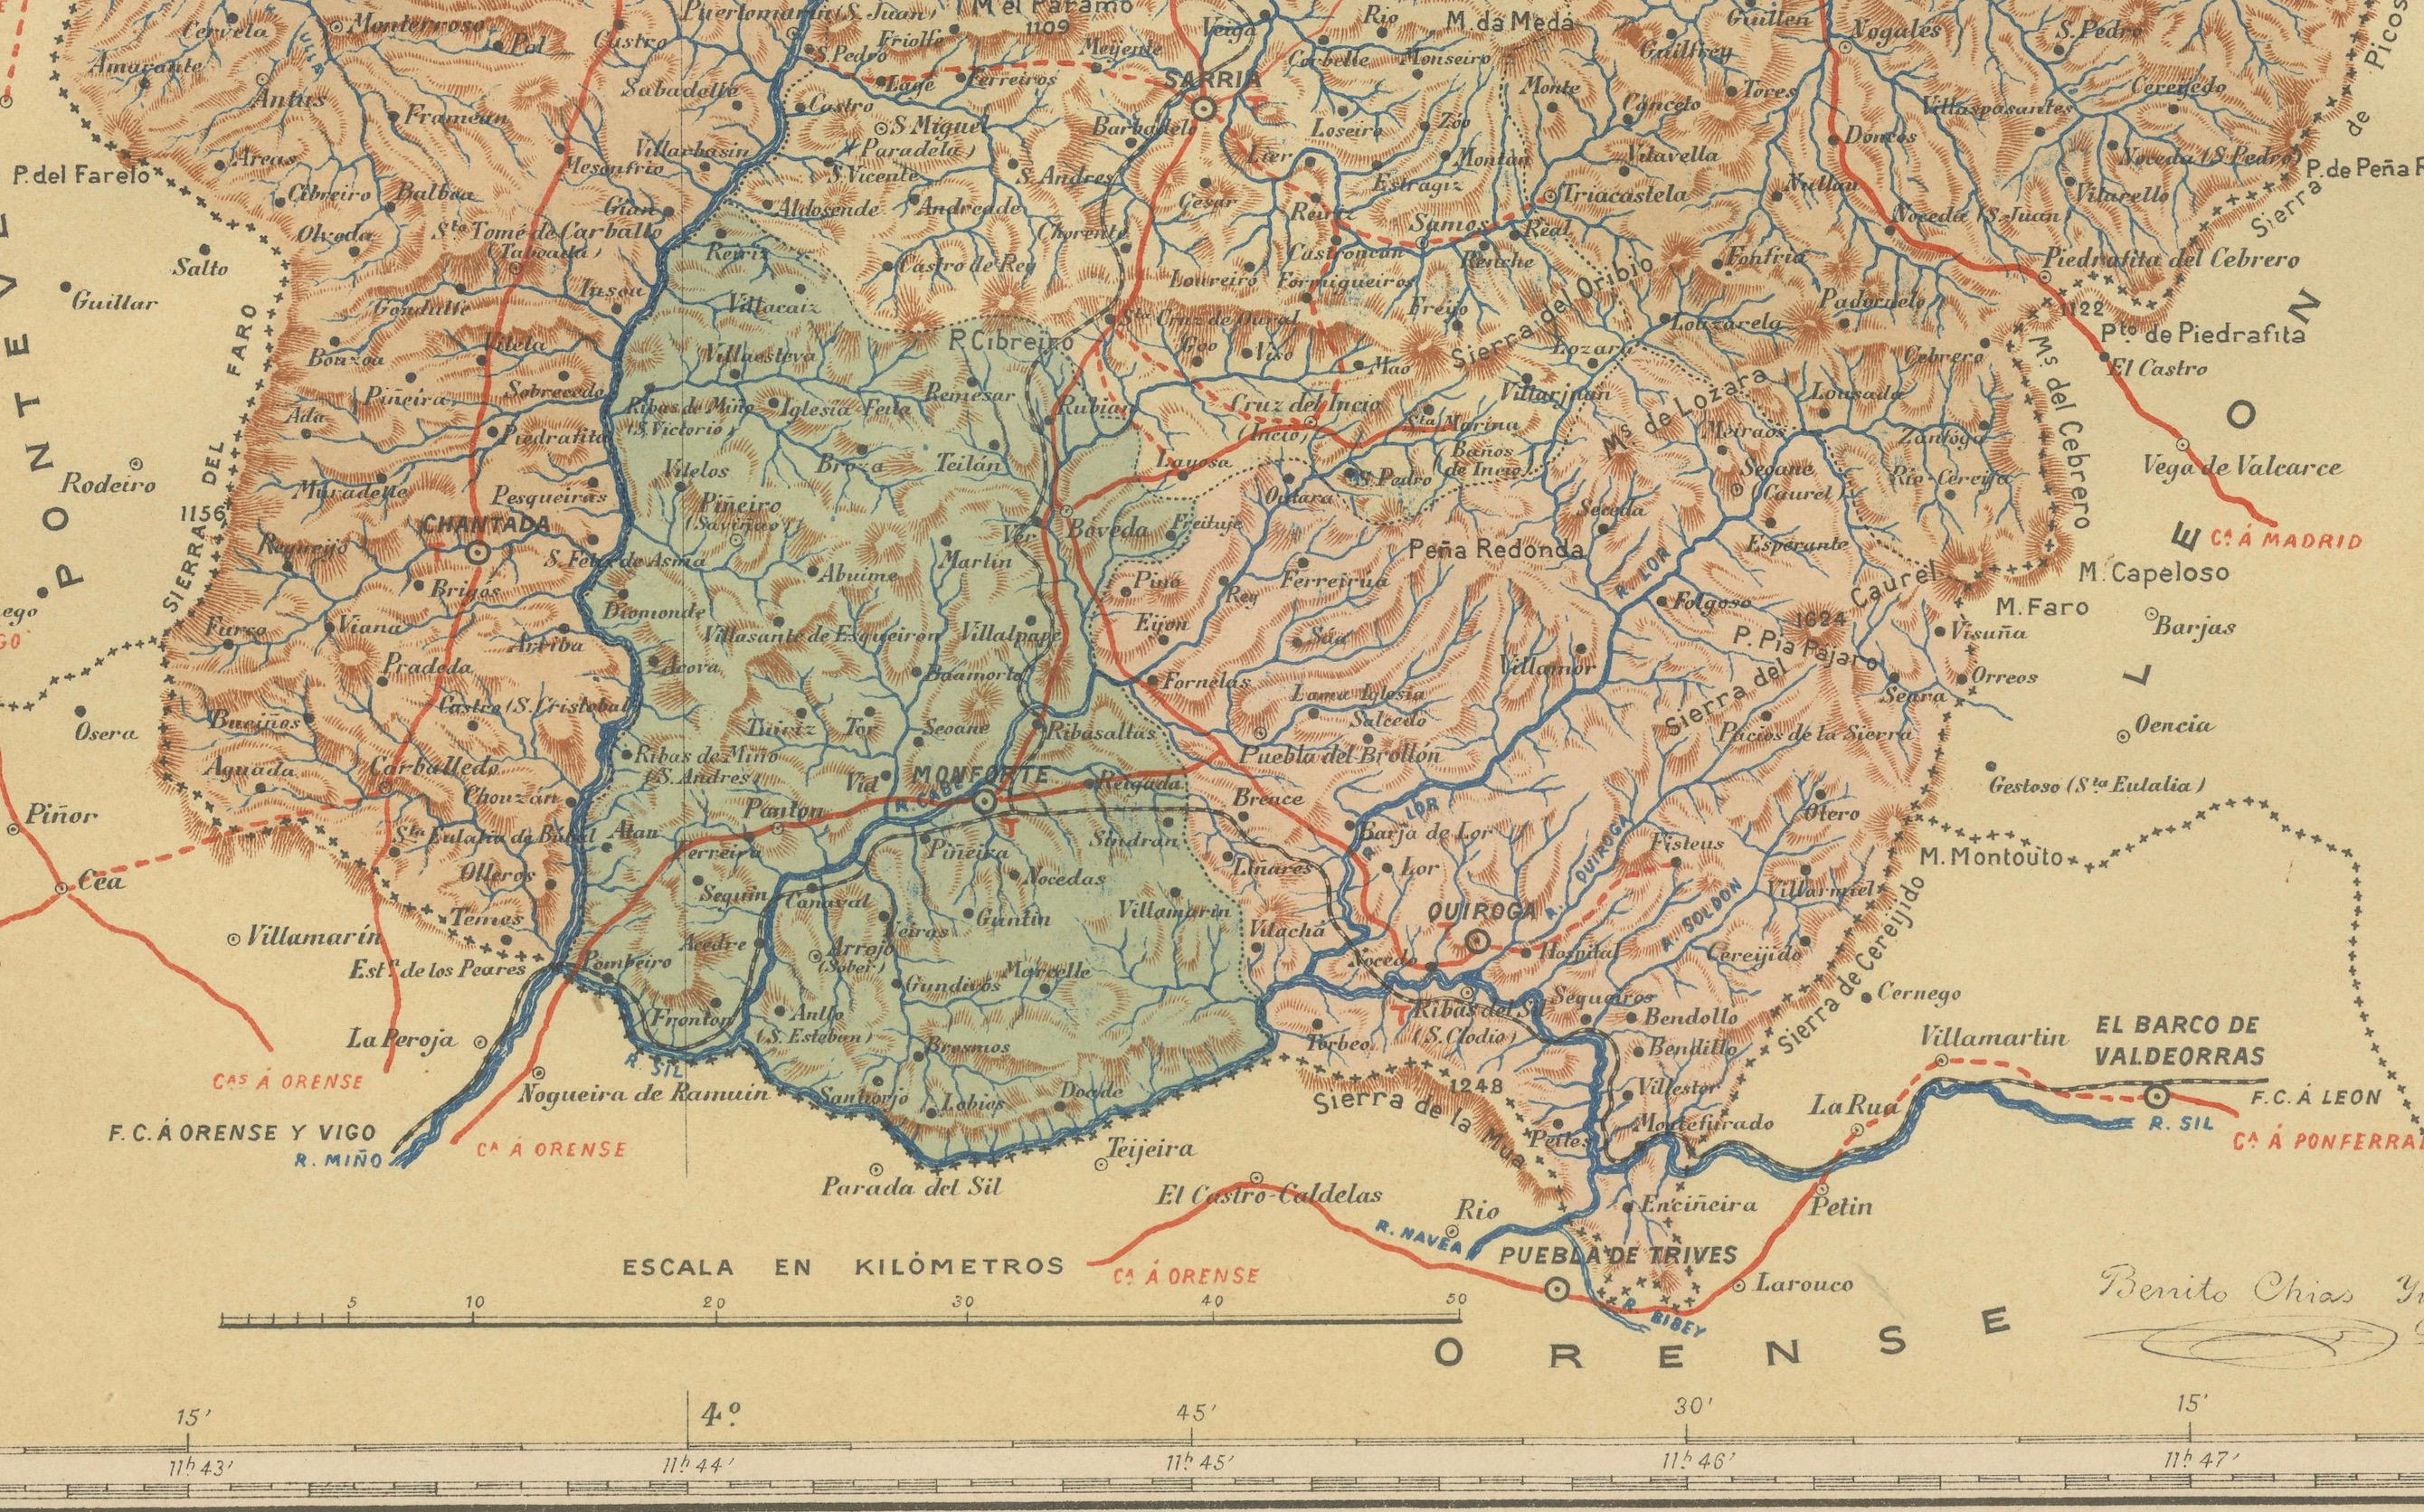 Die Karte zeigt die Provinz Lugo, die in der autonomen Gemeinschaft Galicien im Nordwesten Spaniens liegt, im Zustand von 1901. Bemerkenswerte Merkmale sind:

- **Topographie**: Dargestellt ist die Landschaft der Provinz, die von den Küstengebieten